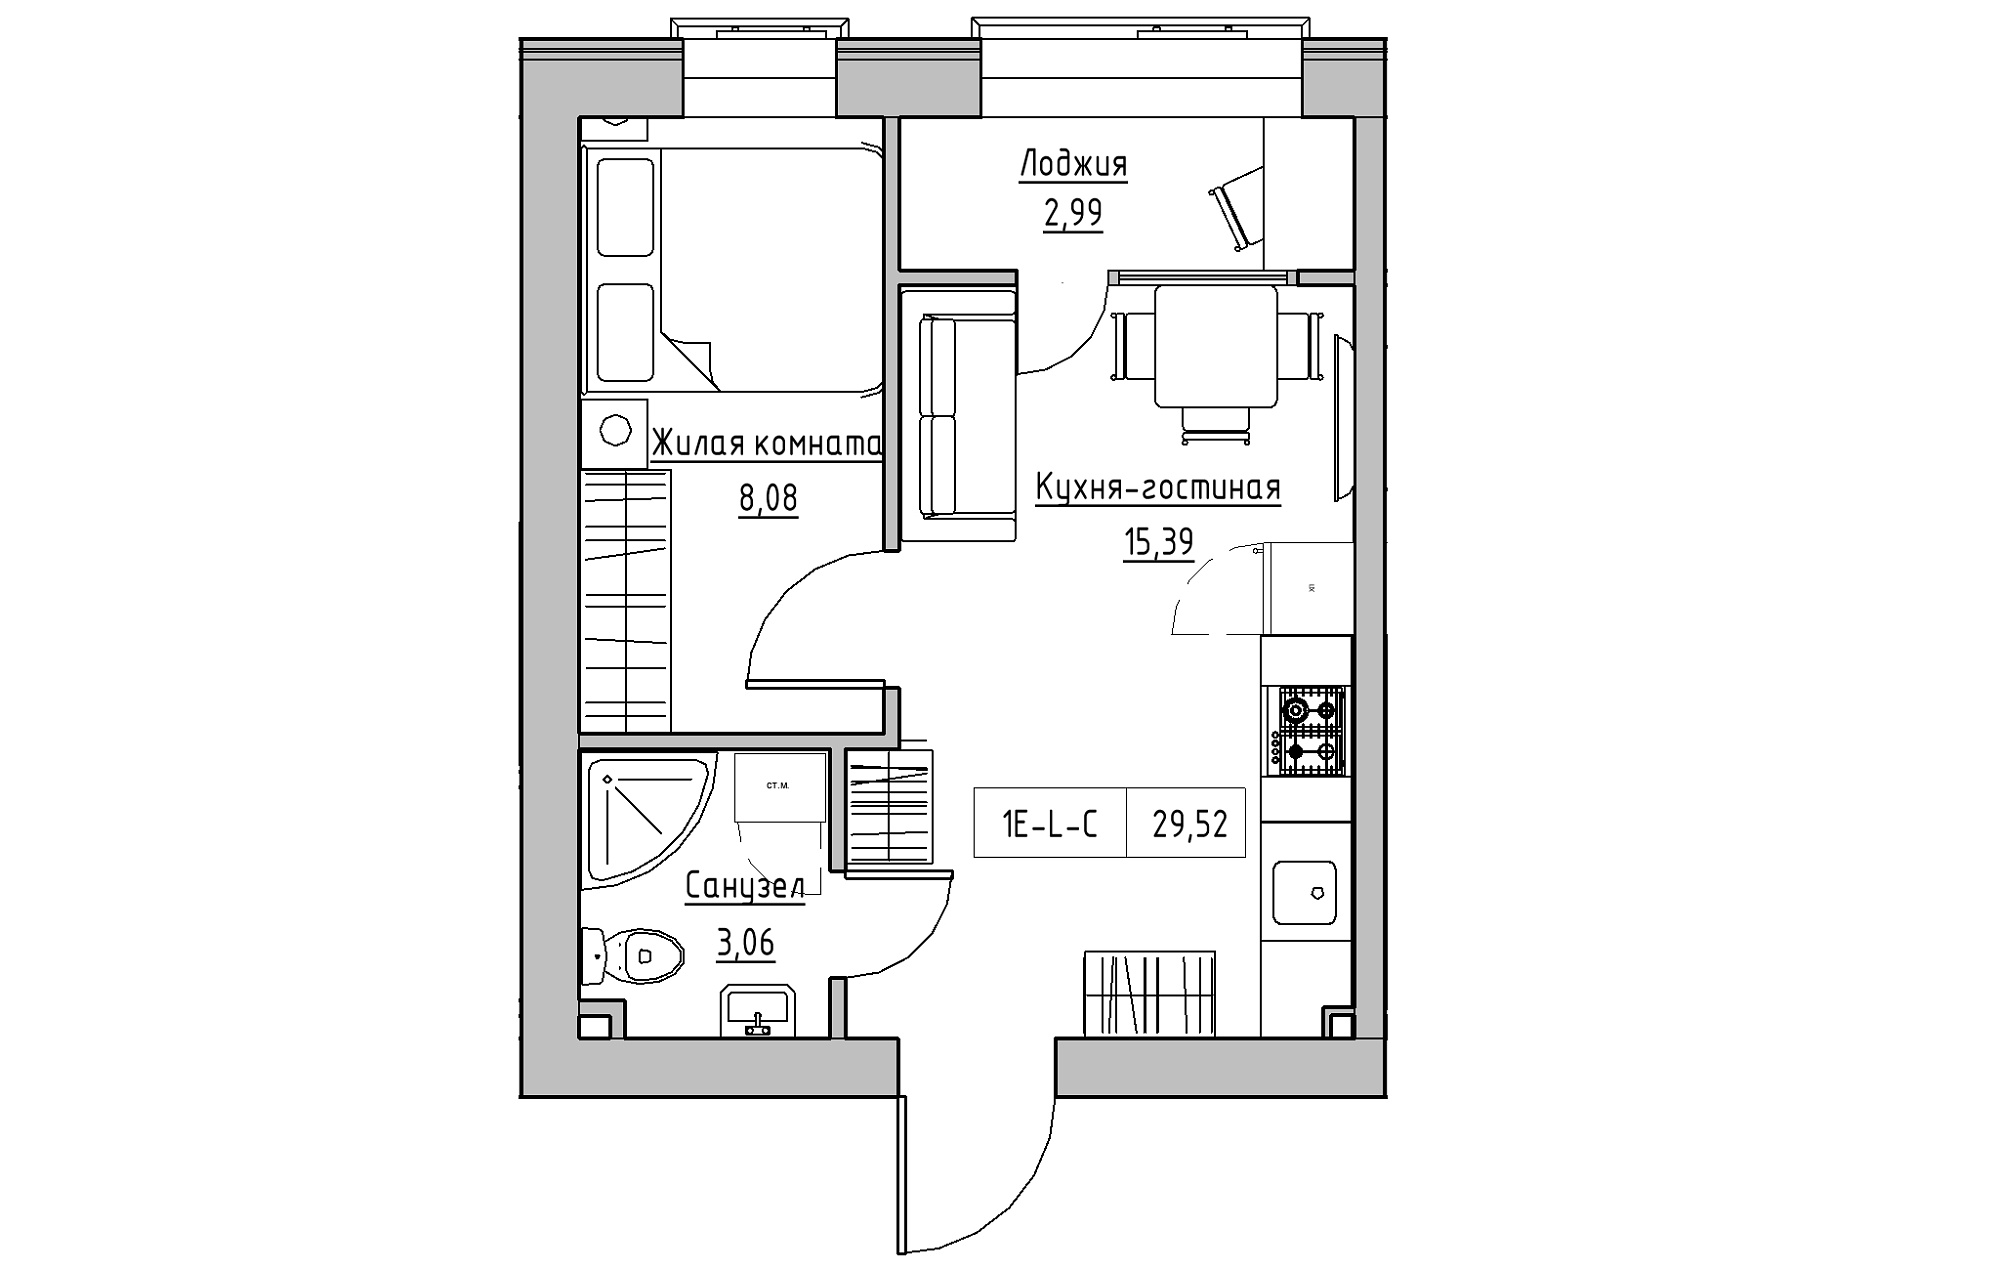 Планировка 1-к квартира площей 29.52м2, KS-018-04/0006.